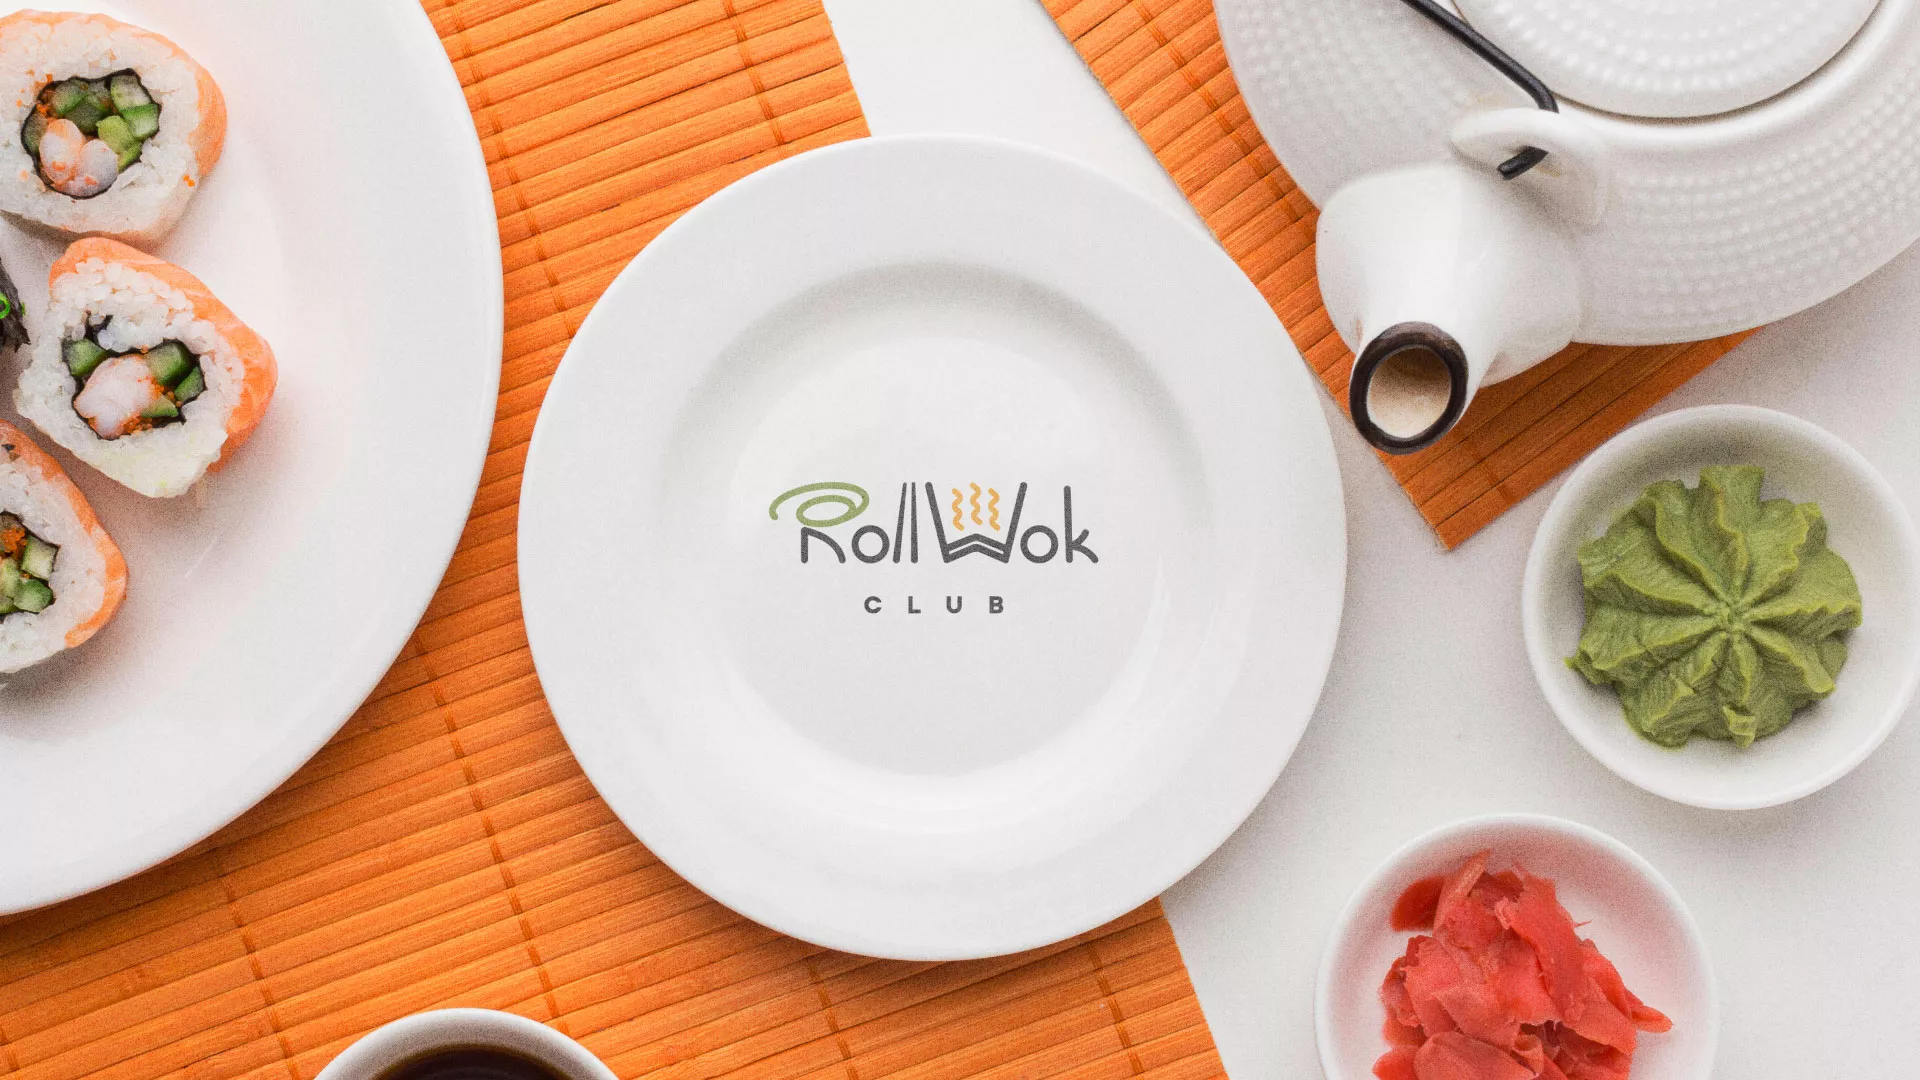 Разработка логотипа и фирменного стиля суши-бара «Roll Wok Club» в Химках